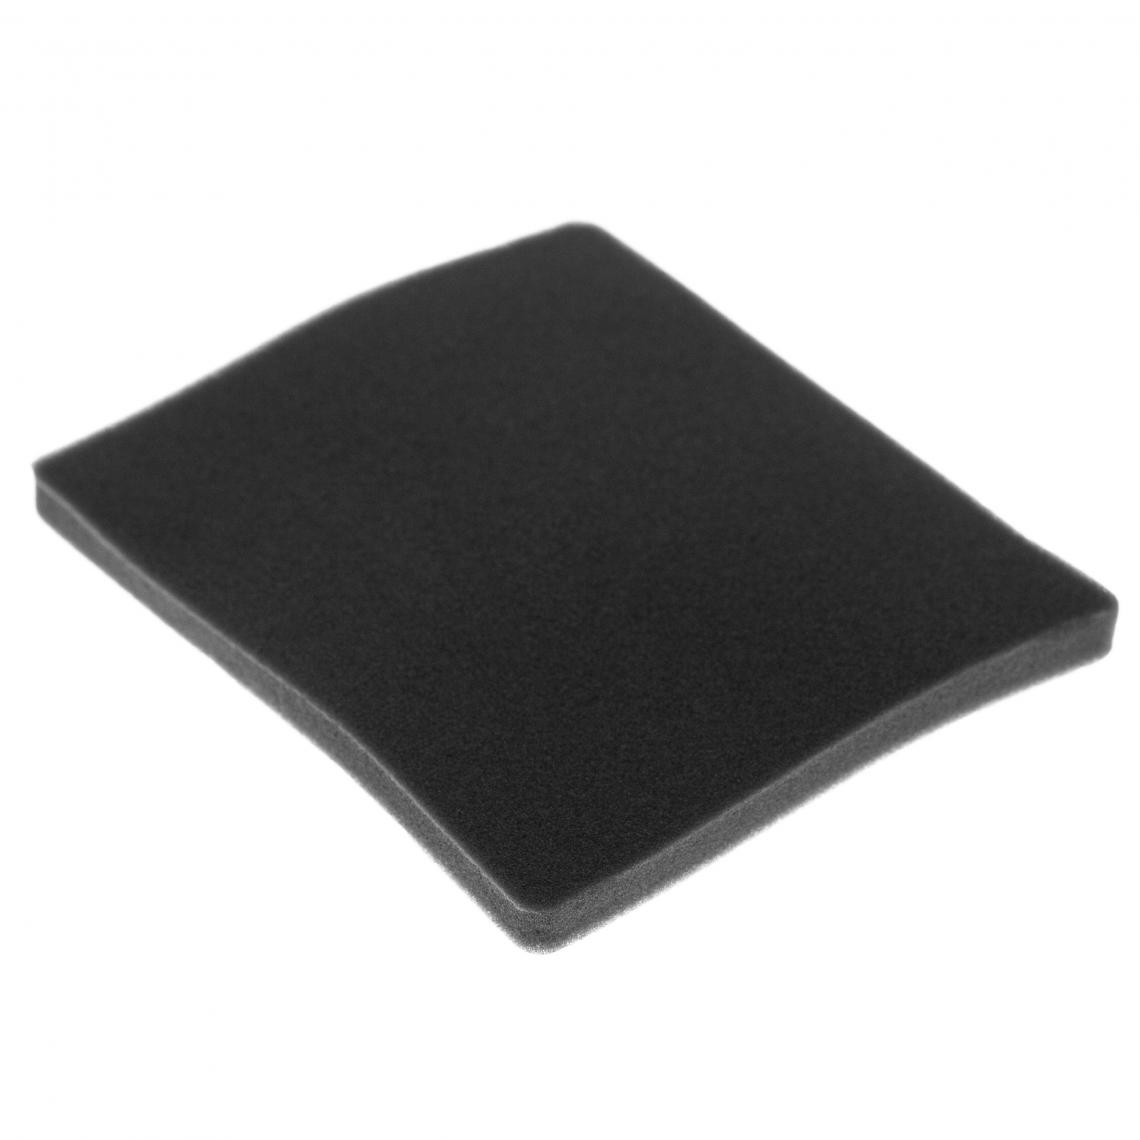 Vhbw - vhbw Filtre compatible avec Electrolux ZAM6103B/B (910286692) aspirateur - filtre de sortie d'air (filtre éponge), noir - Accessoire entretien des sols